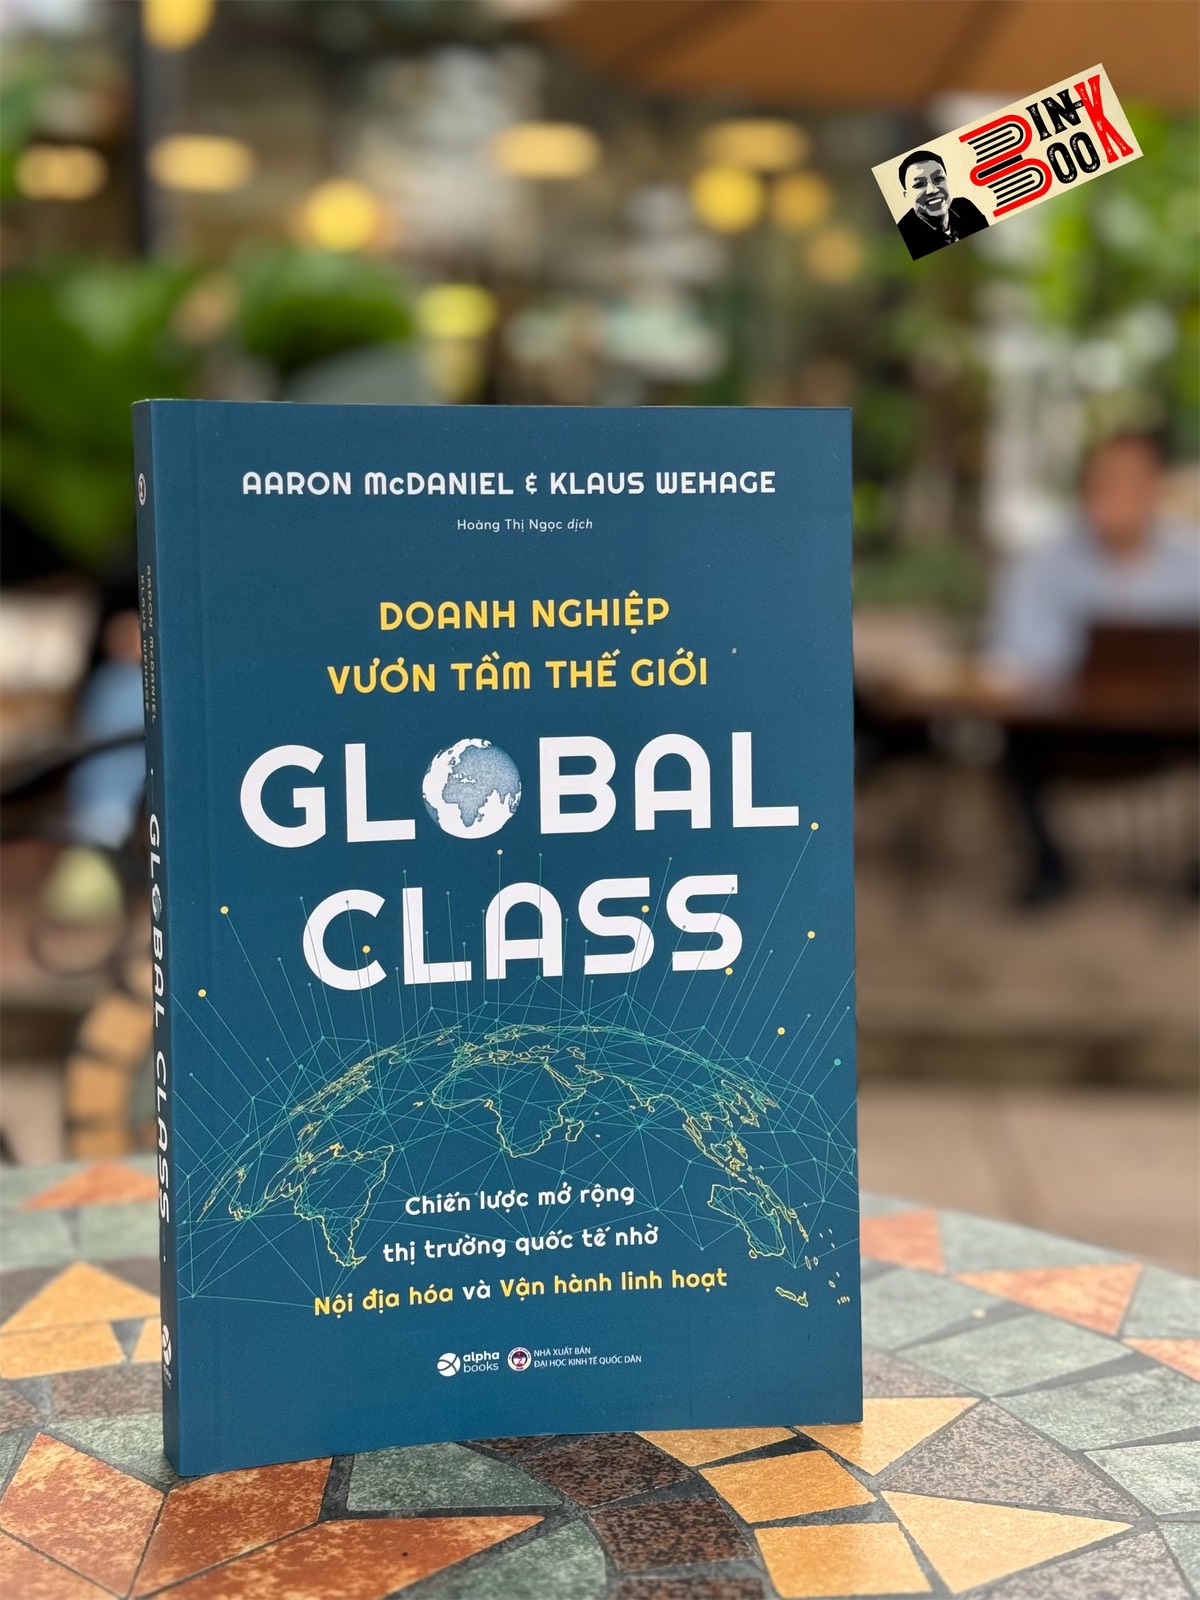 GLOBAL CLASS - DOANH NGHIỆP VƯƠN TẦM THẾ GIỚI - Aaron McDaniel, Klaus Wehage - Hoàng Thị Ngọc dịch - Alpha Books - NXB Đại học Kinh Tế Quốc Dân.